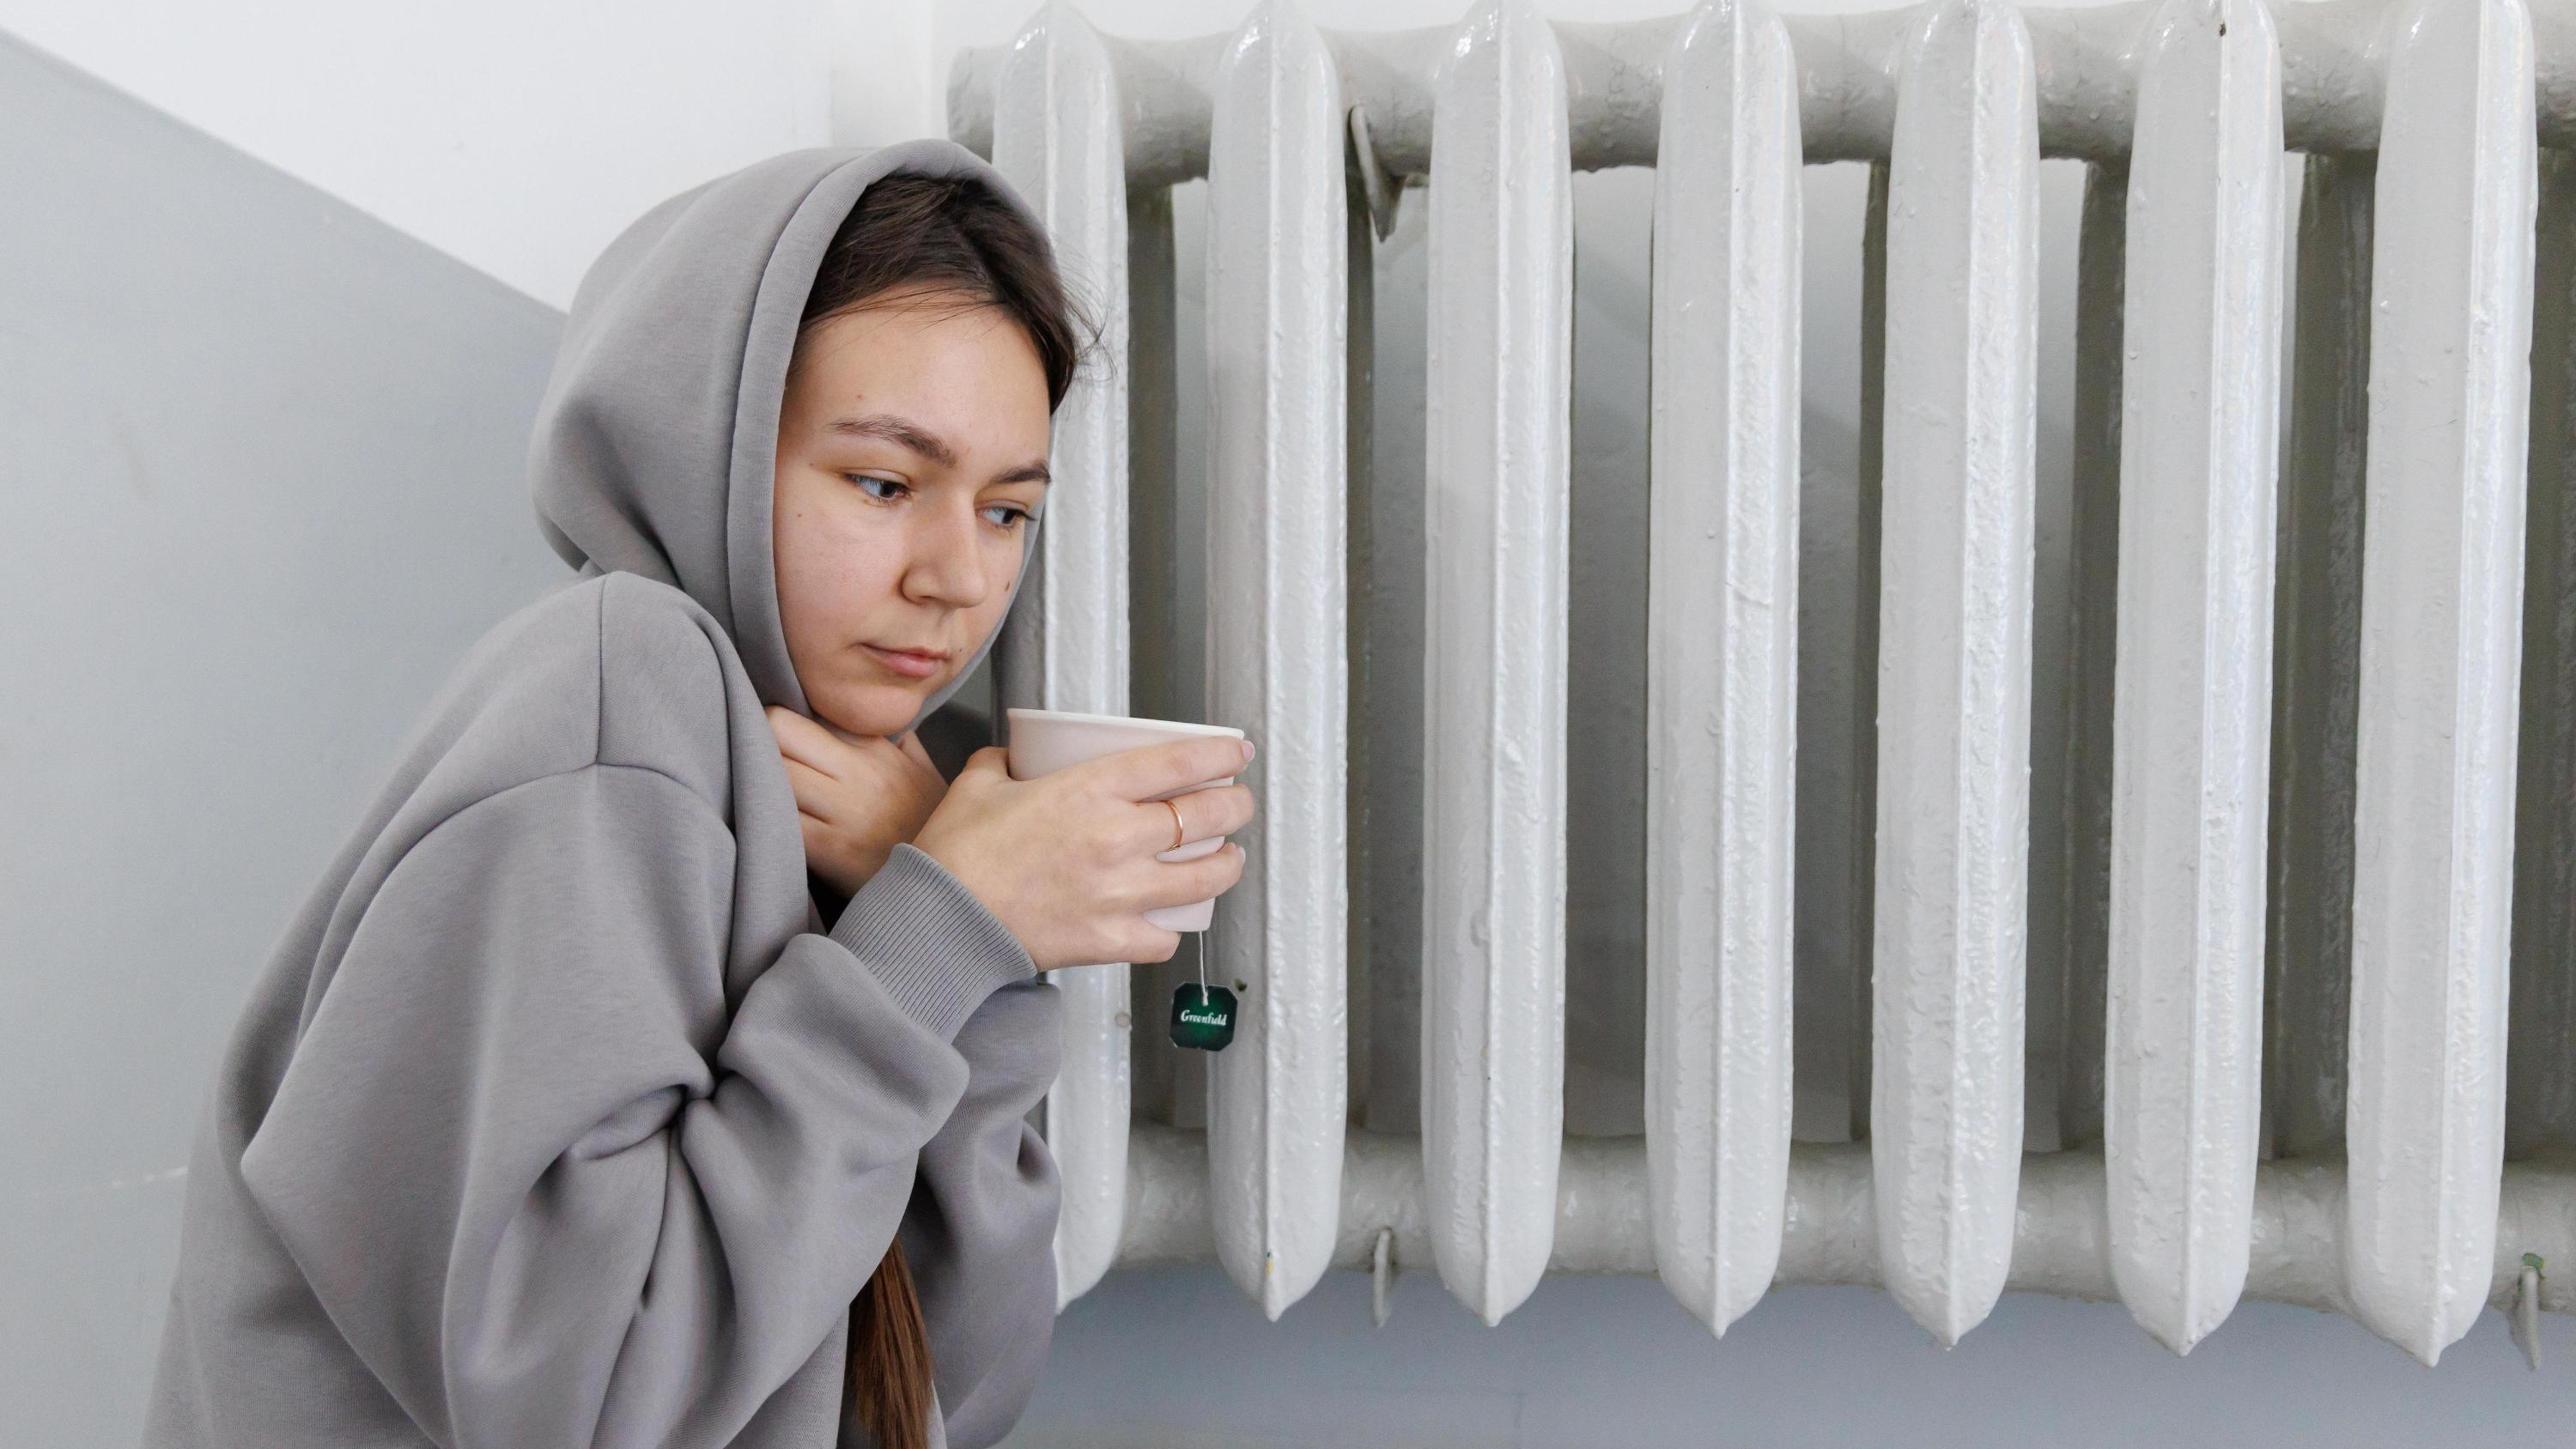 «Дома холоднее, чем на улице». Москвичи жалуются на отсутствие отопления в квартирах: показываем самые замерзающие районы на карте